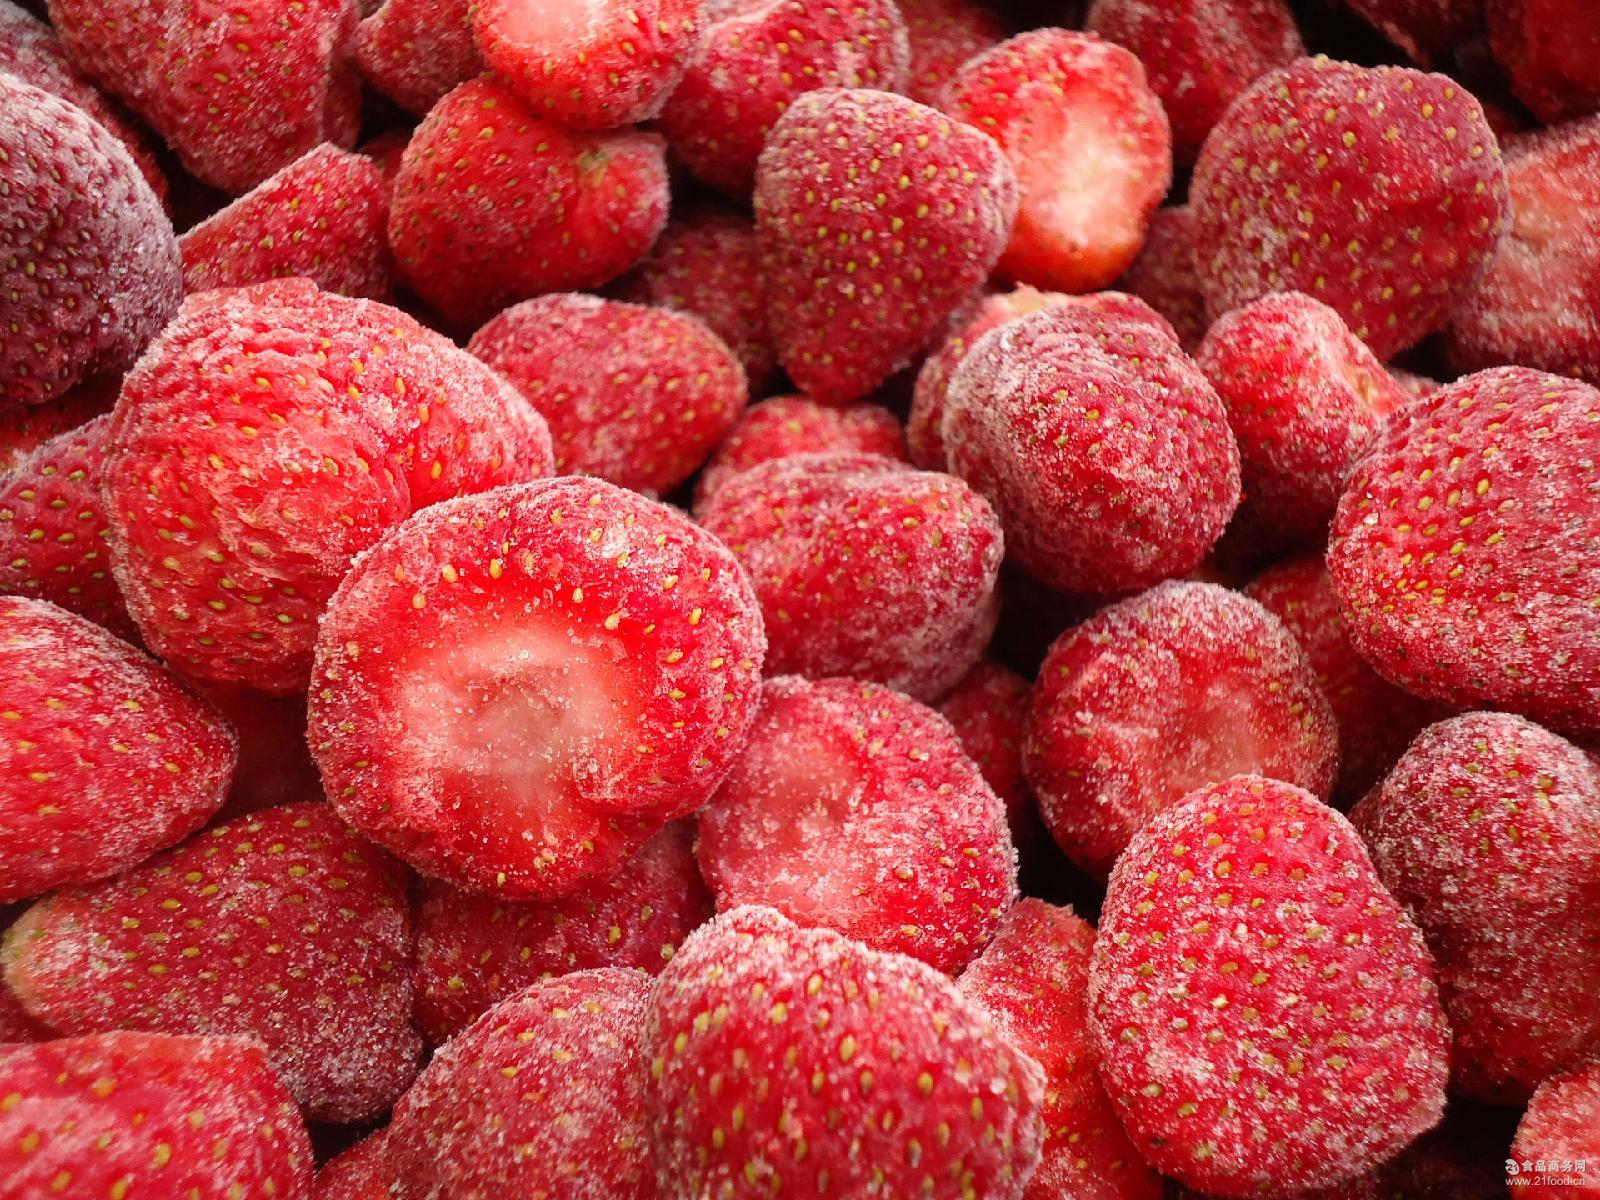 厂家批发出口冷冻草莓 新鲜大果 iqf速冻单冻草莓a级 优级原料 ￥9500